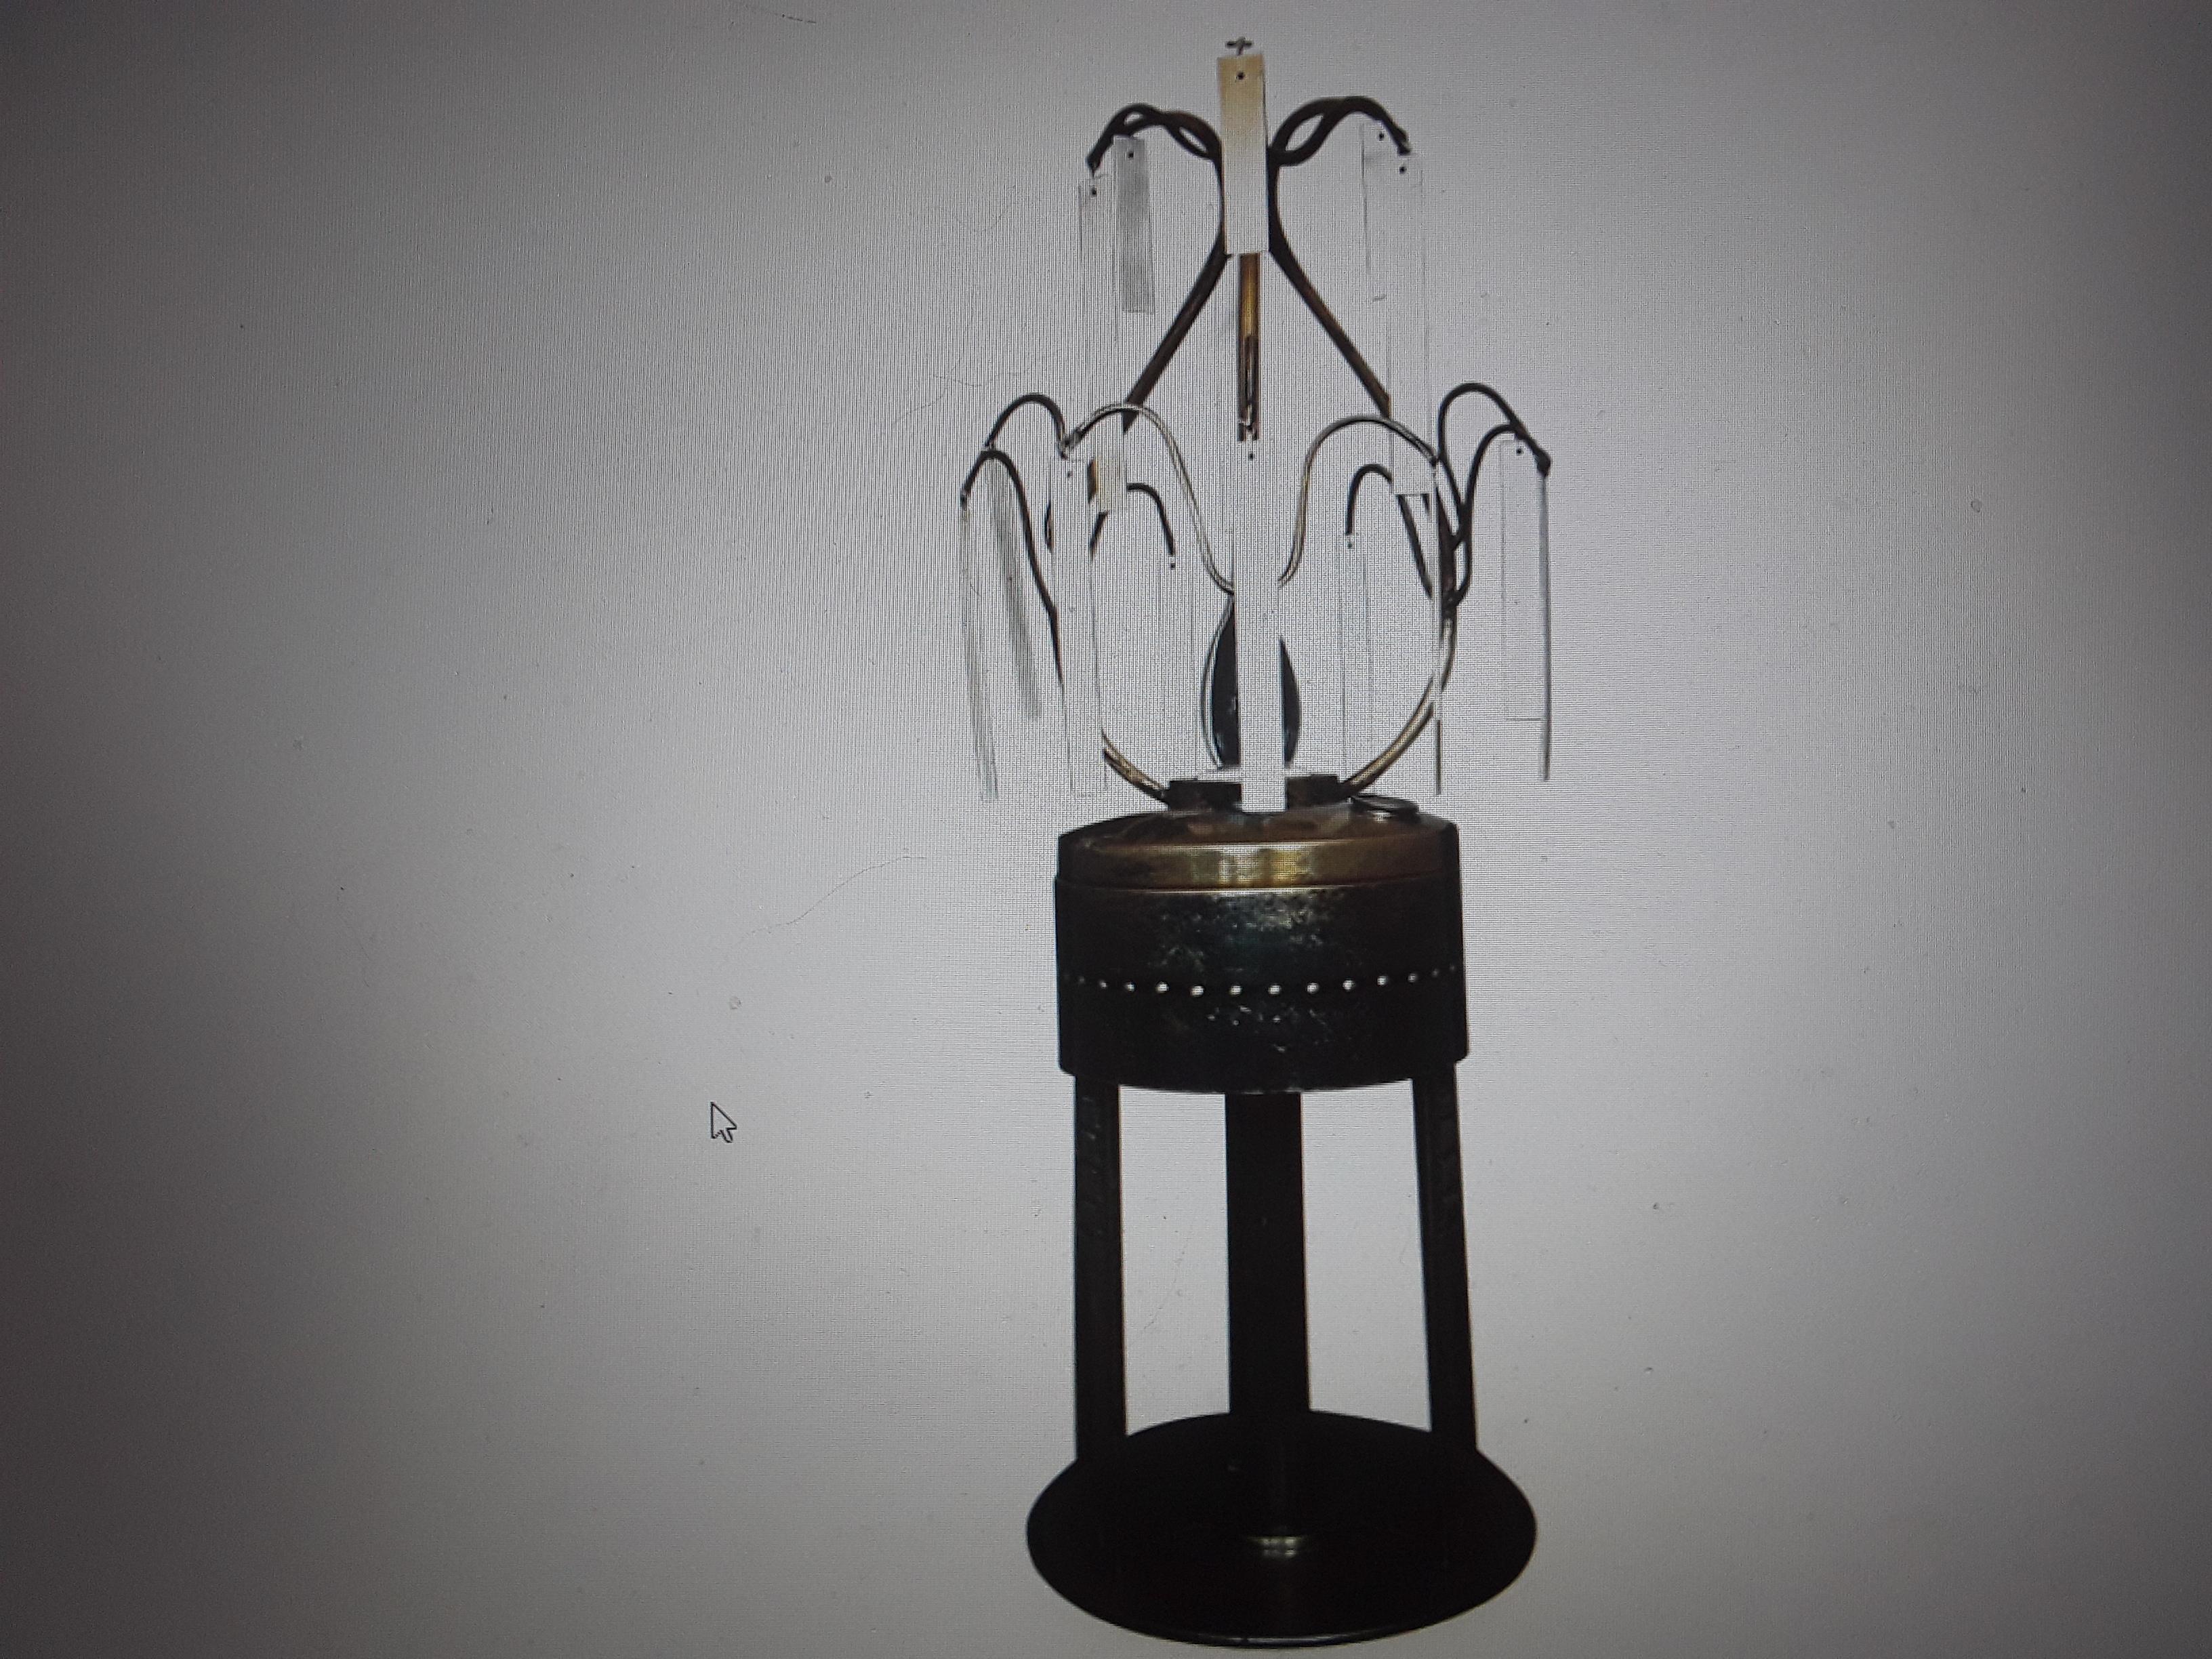 Rare 1890 German Jugendstil Arts & Crafts Oil Lamp Now Electric With Bone Slabs For Sale 11